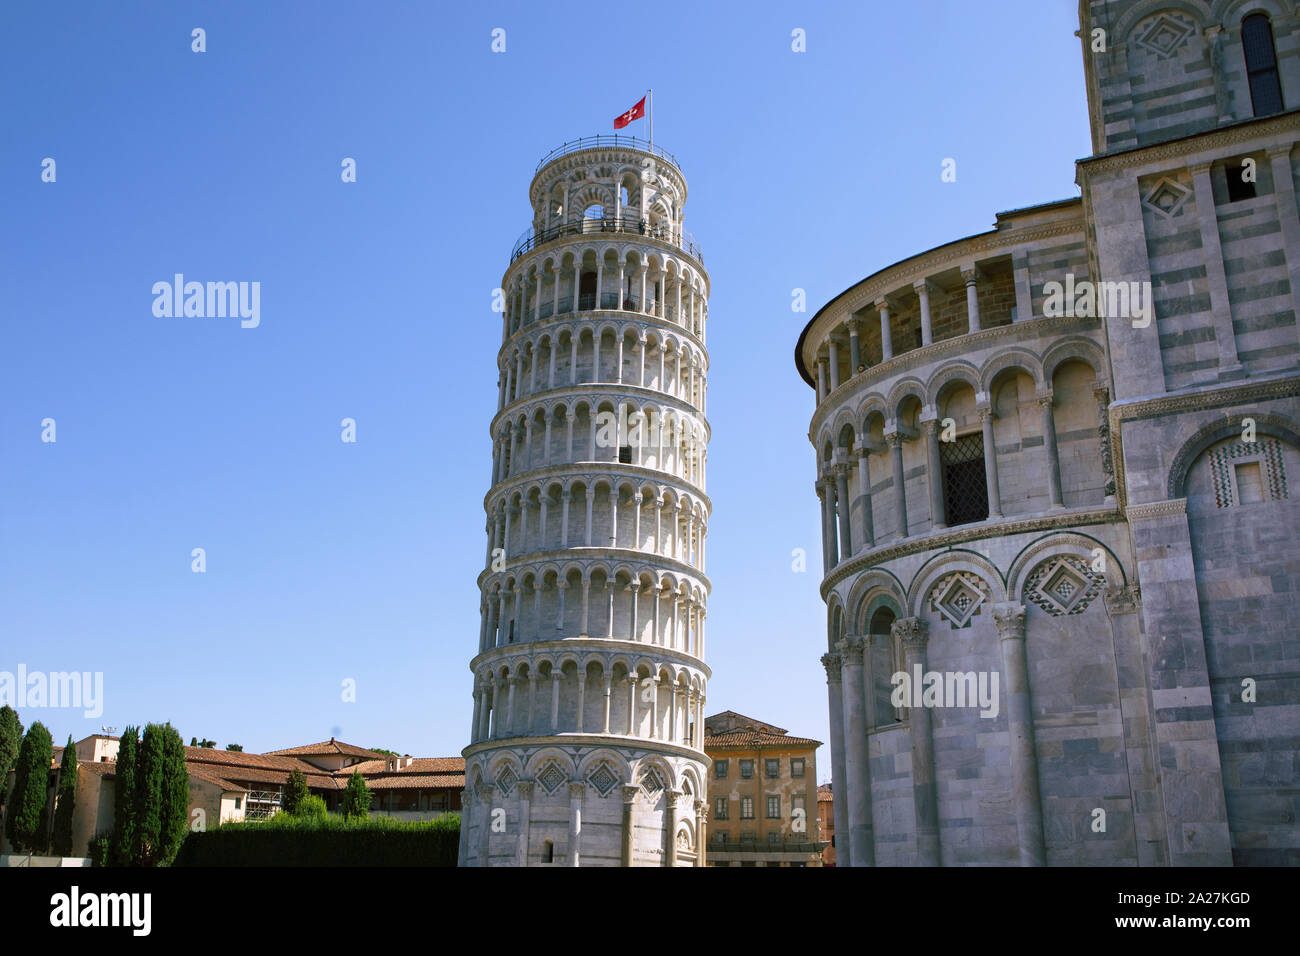 Schiefe Turm von Pisa mit Teil der Kathedrale der Hl. Maria und die umliegenden Gebäude auf dem Platz. Blauer Himmel, Sommer, keine Menschen. Italien Stockfoto